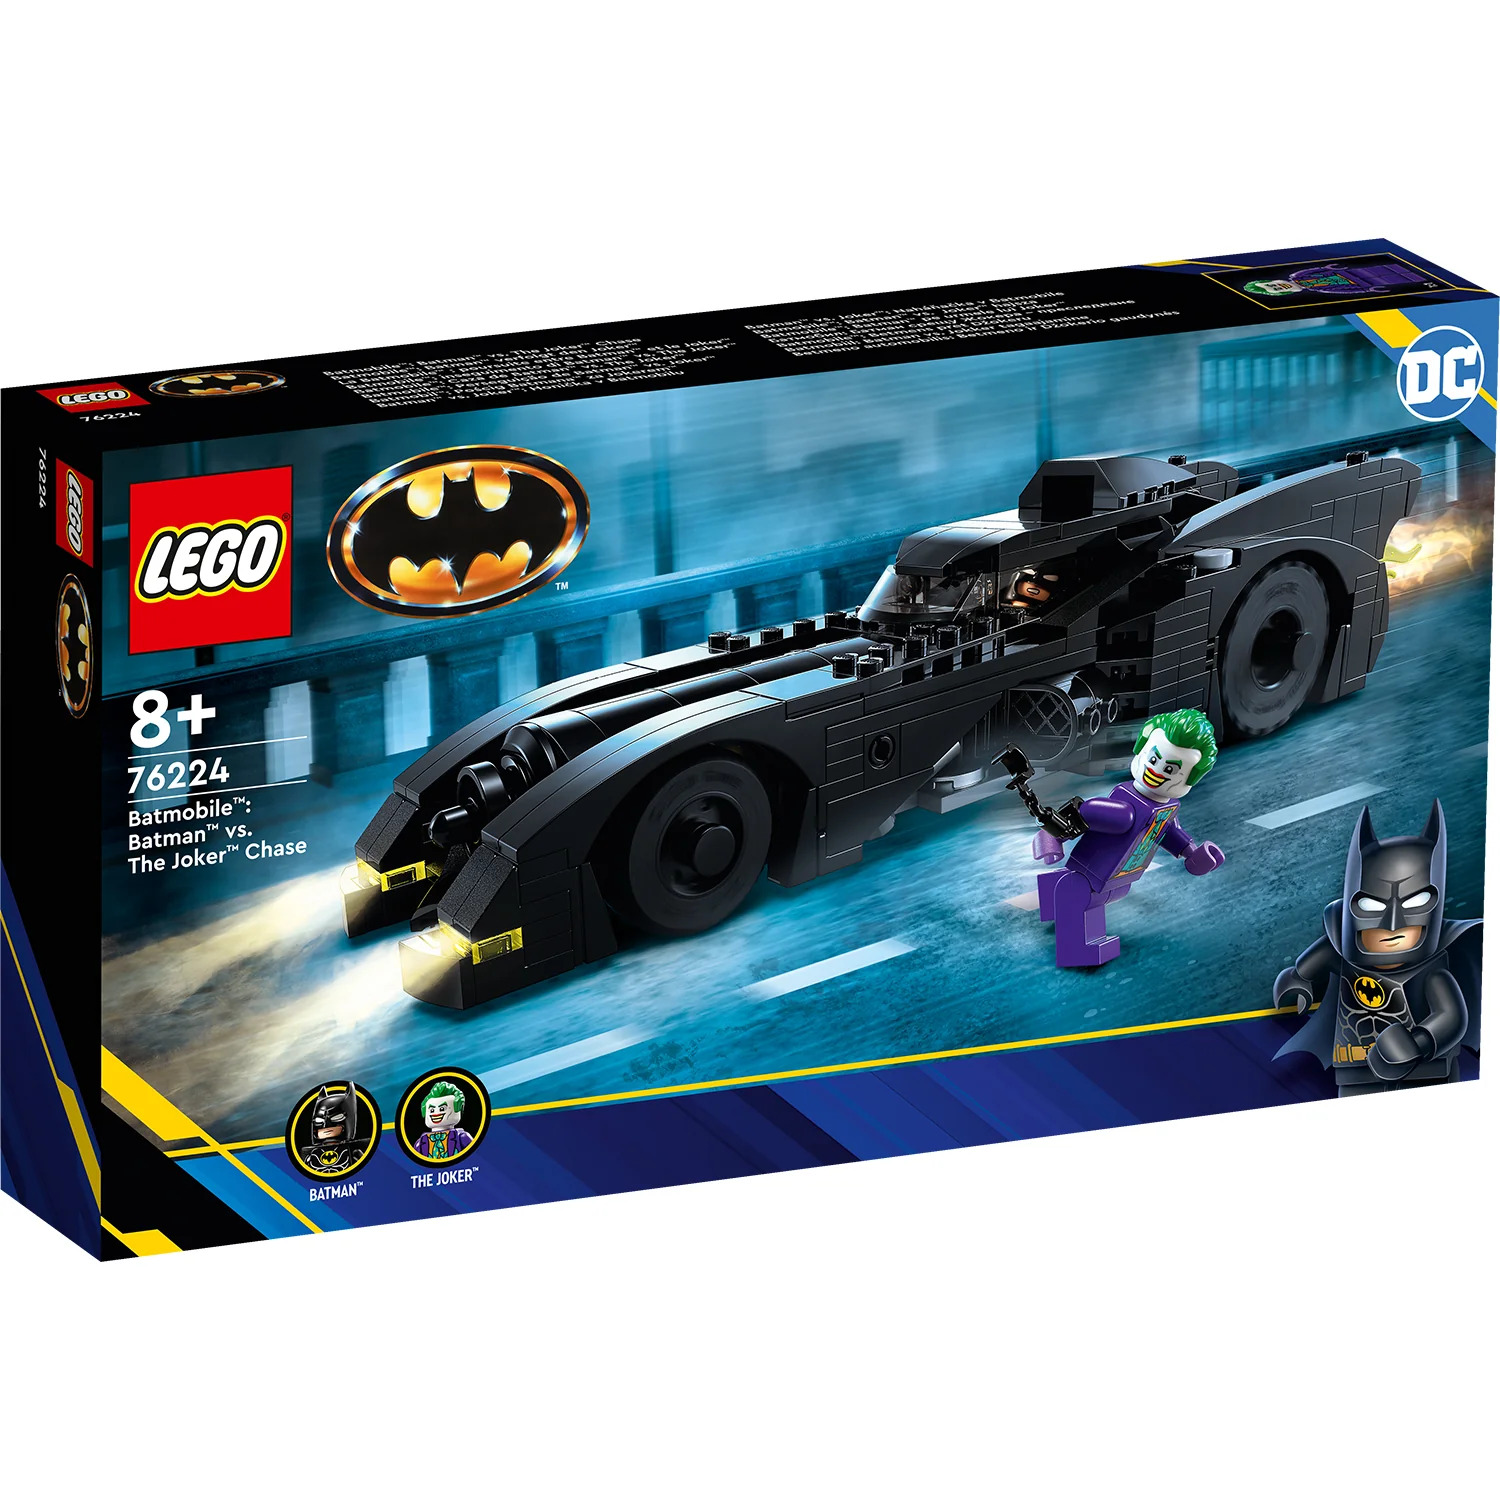 LEGO DC Batmobile: Batman vs. The Joker Chase (76224) Revealed - The ...